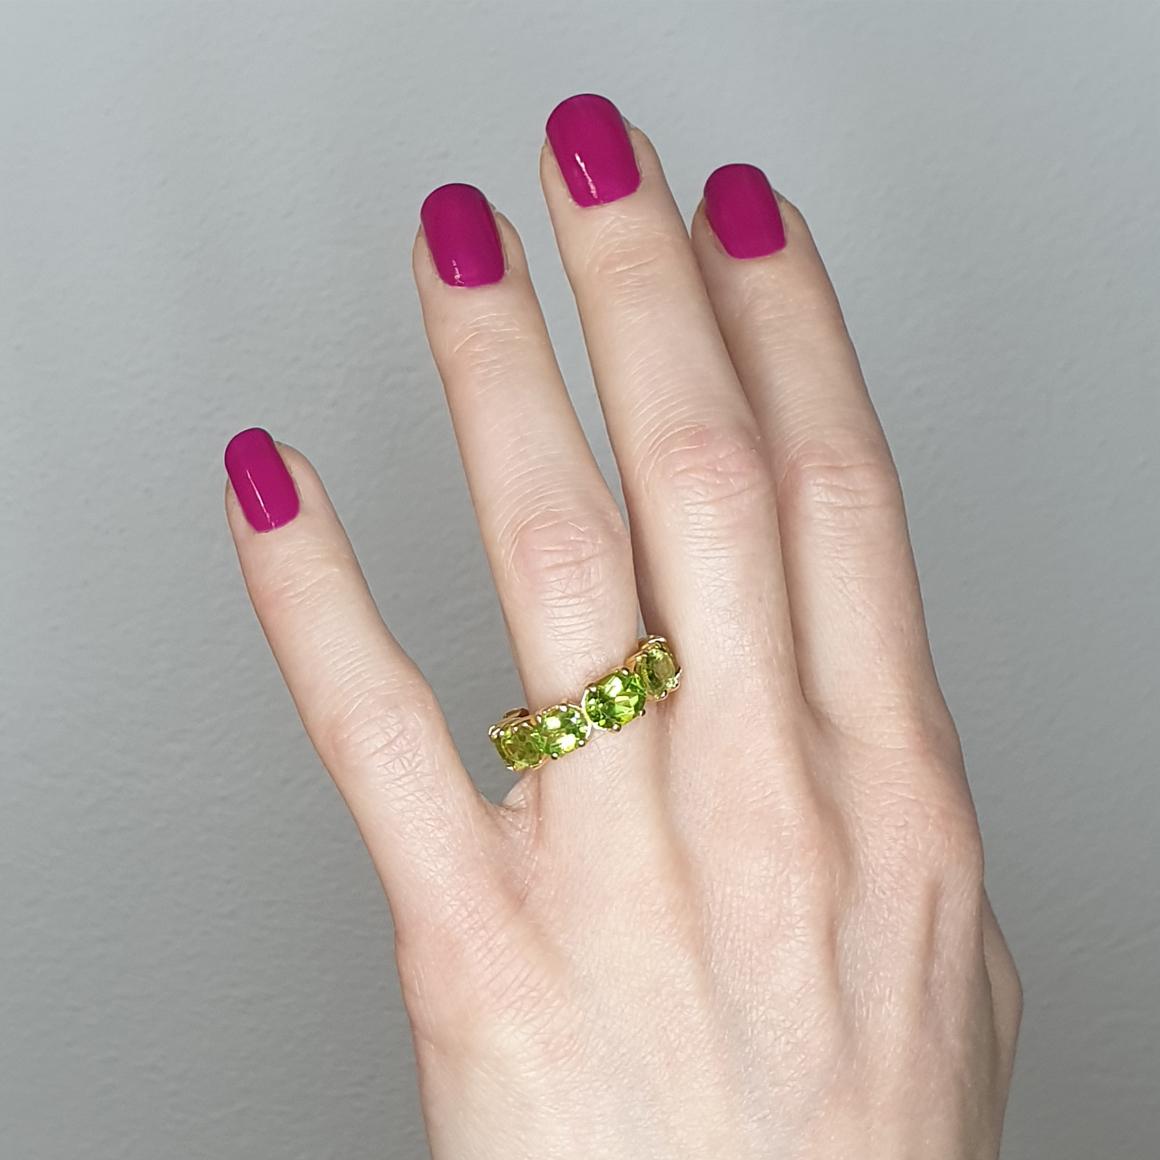 Klassischer und trendiger Ring, nicht nur Ehering, sondern auch ein Ring für jede Gelegenheit mit fantastischen Farben. Ewiger Ring. Design und Handwerkskunst, hergestellt in Italien von Stanoppi Jewellery seit 1948.

Klassischer Ring aus 18 Karat